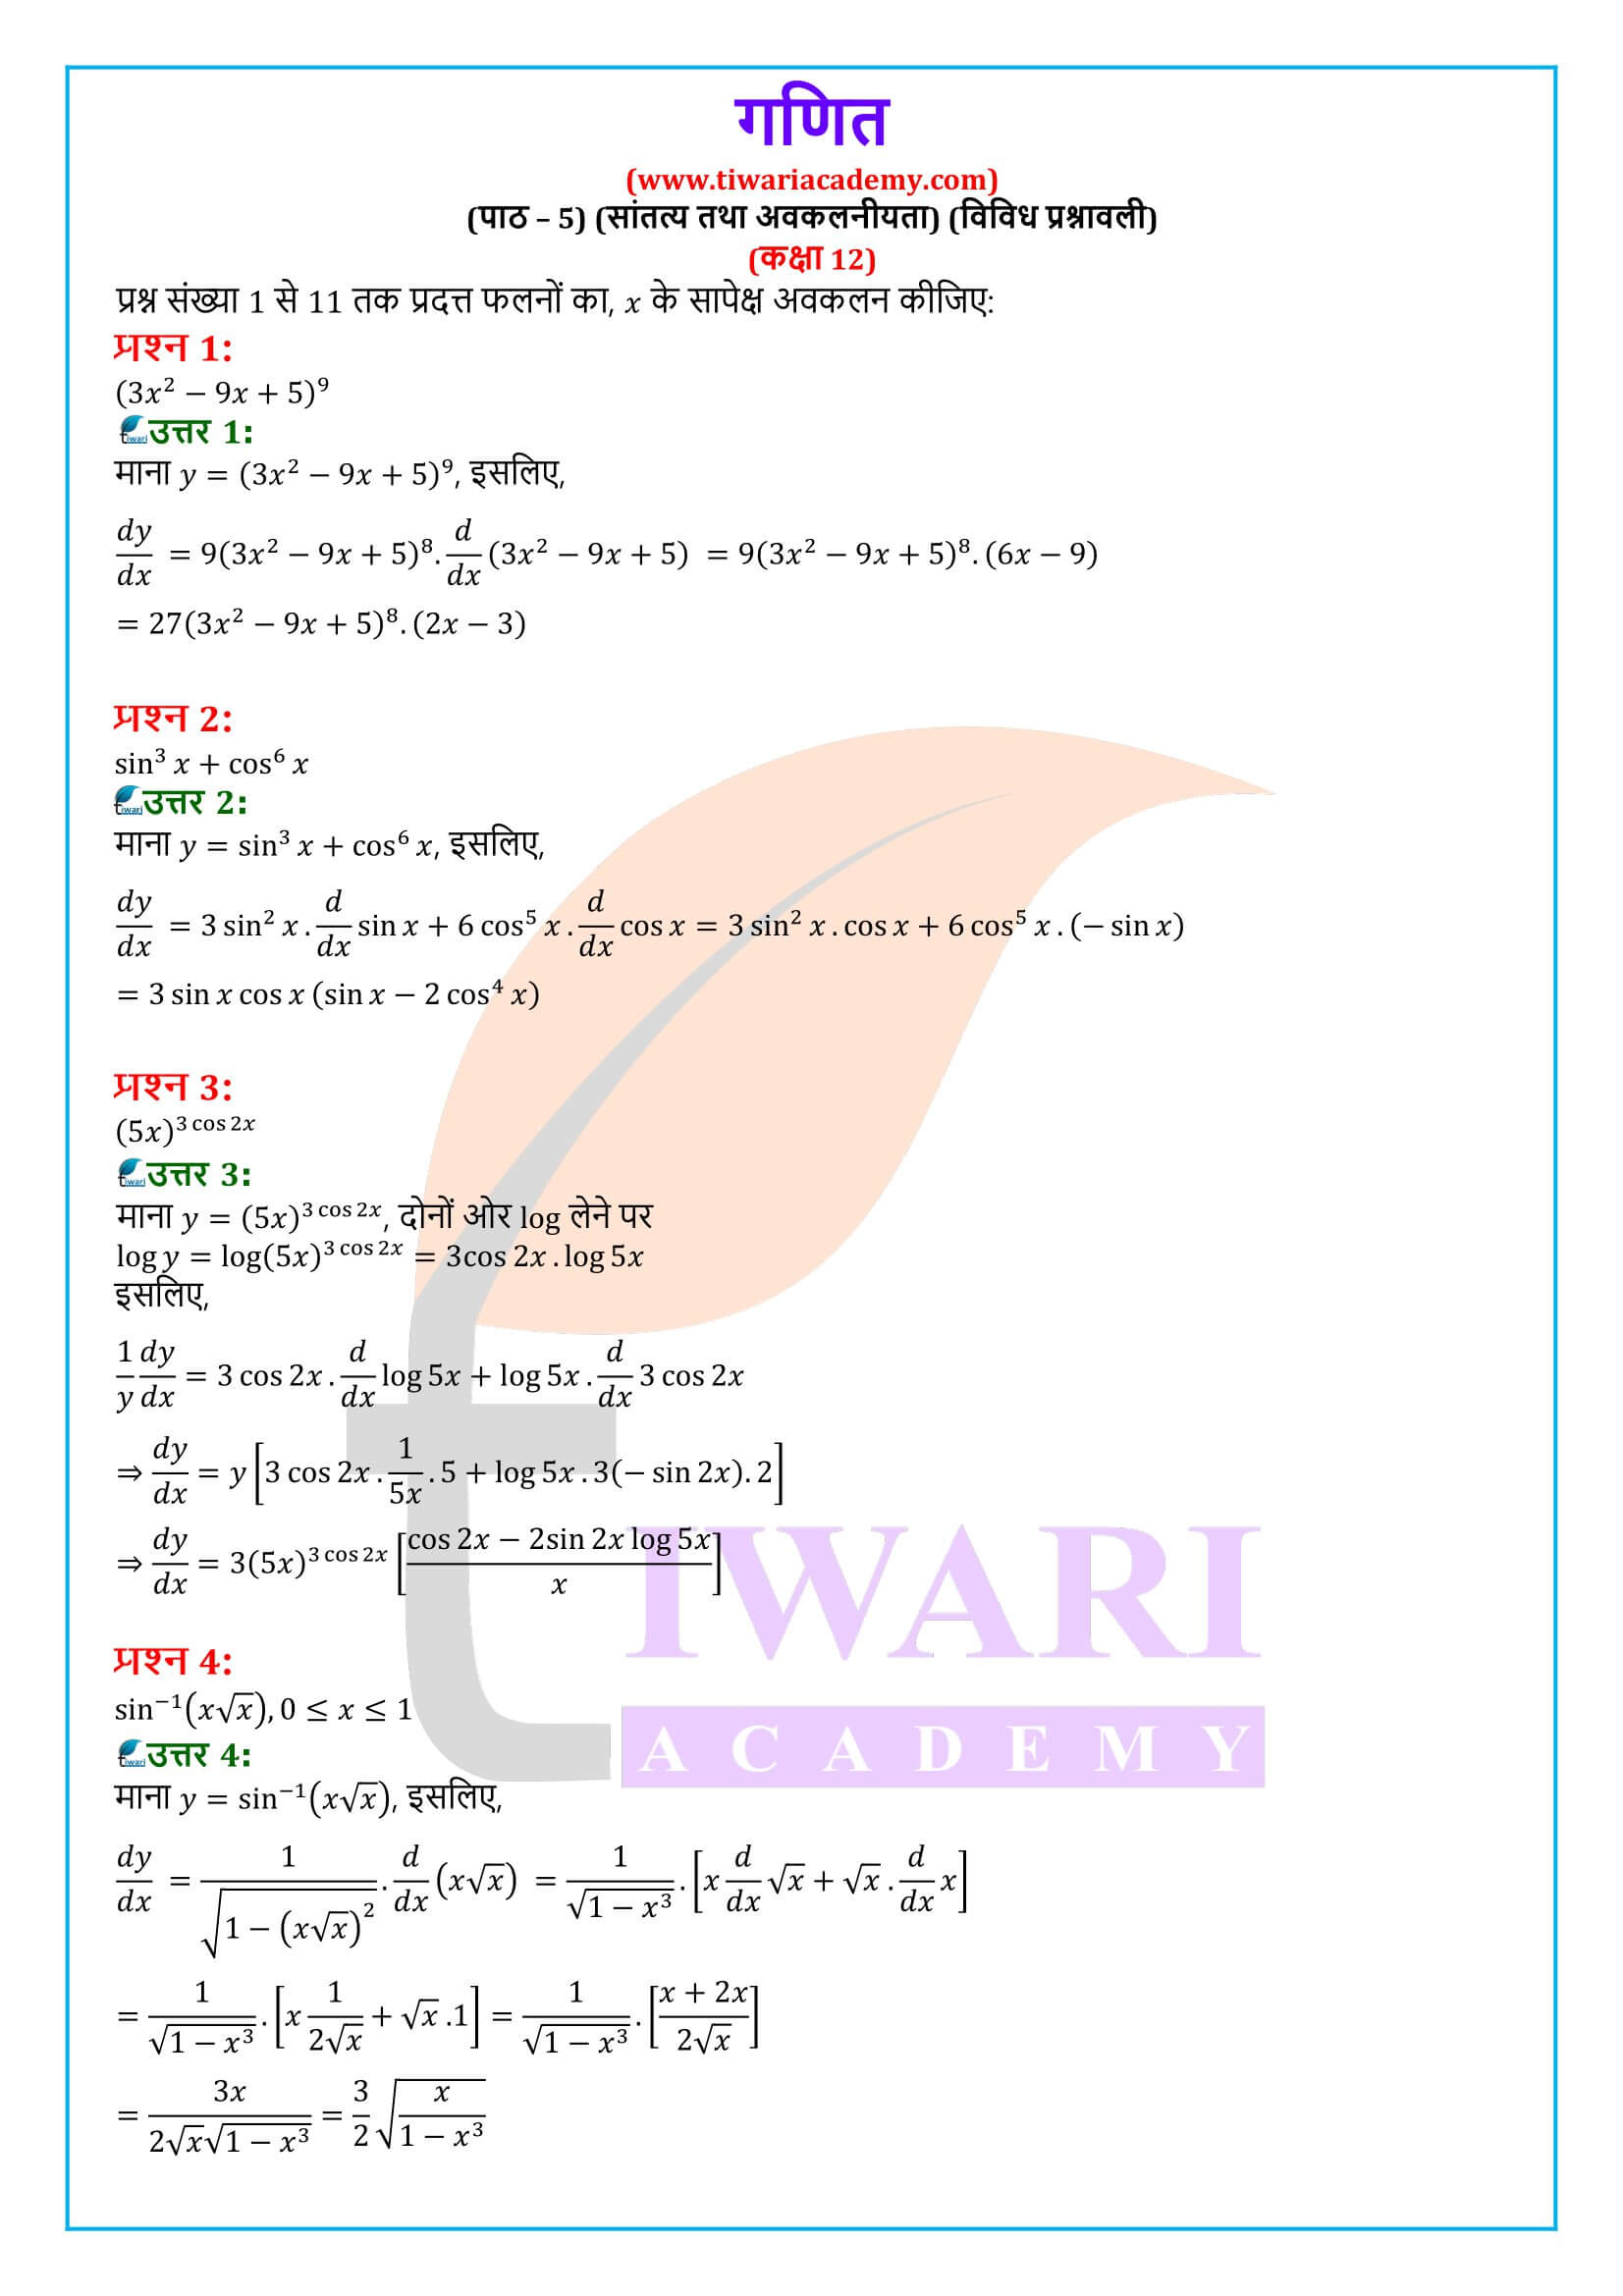 कक्षा 12 गणित अध्याय 5 विविध प्रश्नावली के समाधान